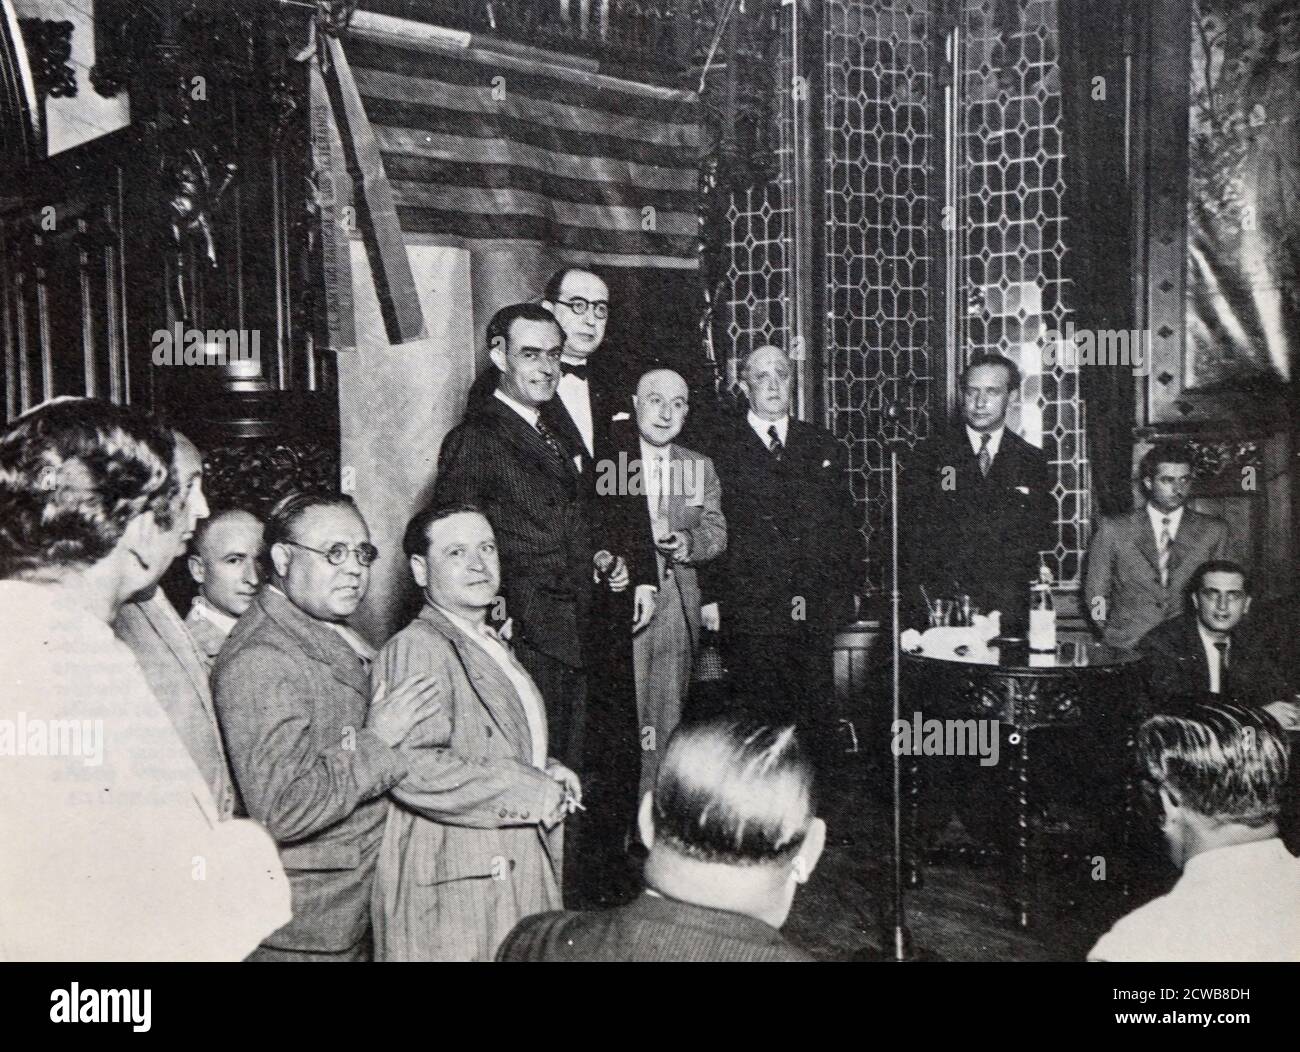 Perez Madrigal à la conférence d'apress, tenue à Barcelone le 27 août 1933. Perez Madrigal, qui appartenait à l'époque au Parti radical, attaqua le chef du gouvernement, Chapaprieta Banque D'Images